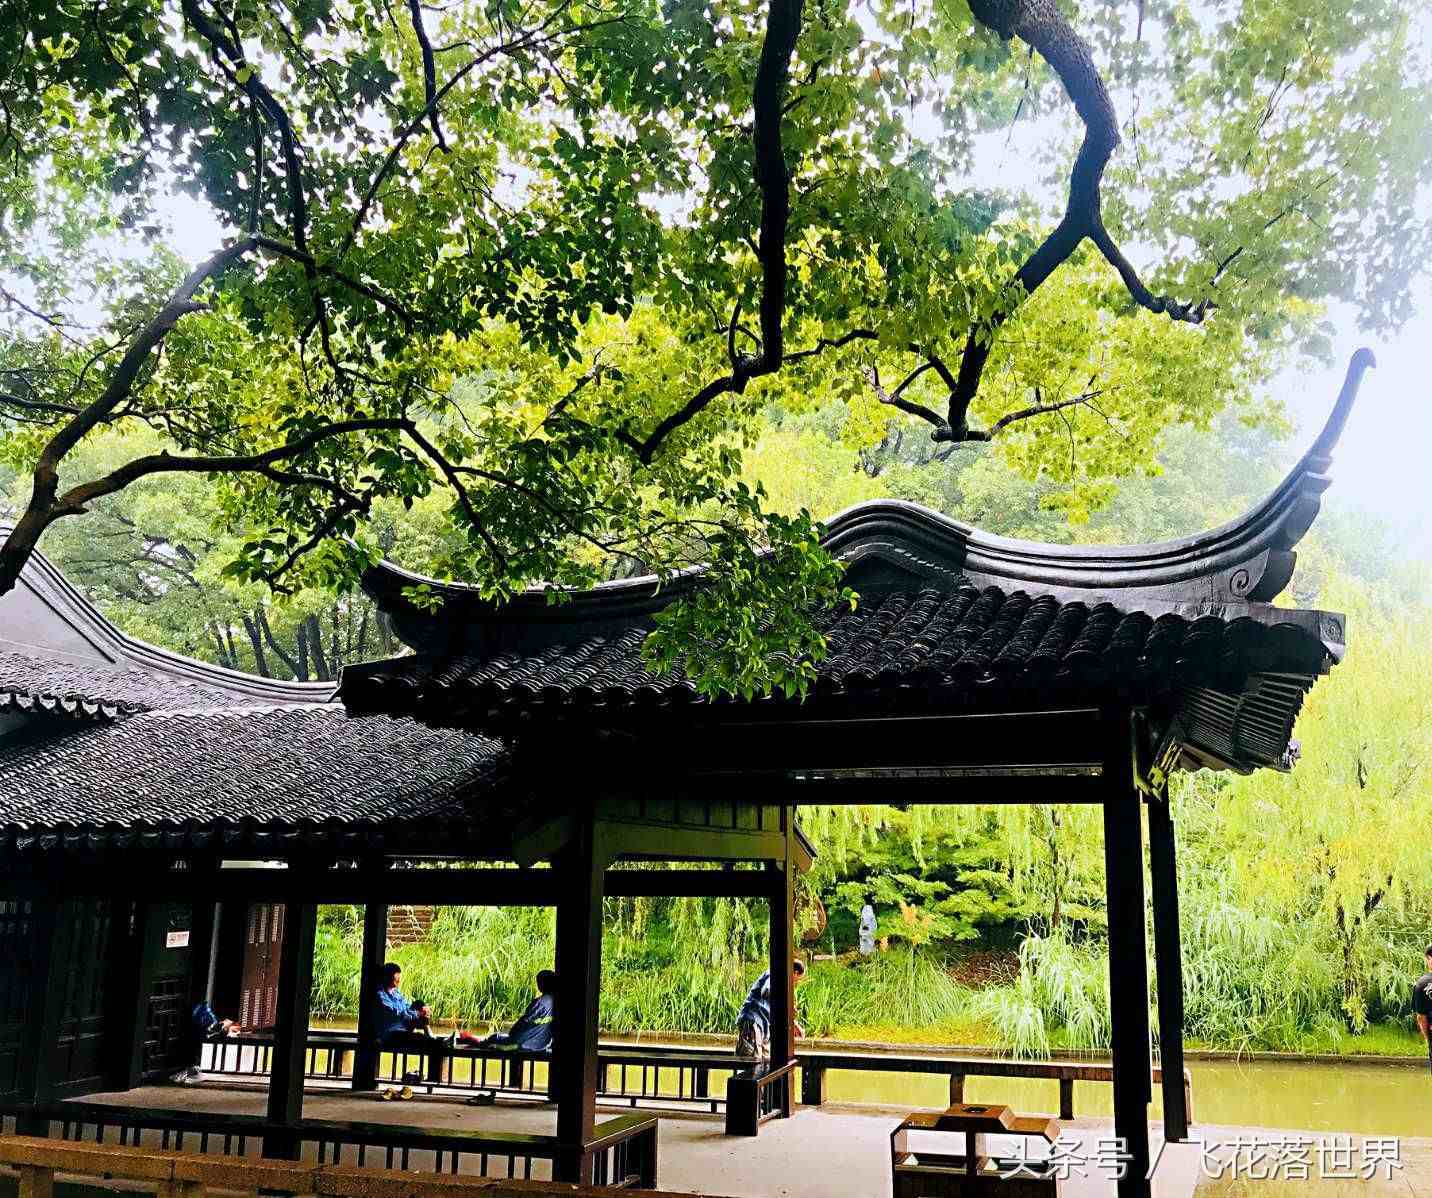 上海市松江区有一座少有游客前往的4A级景区方塔园，有故事的园林